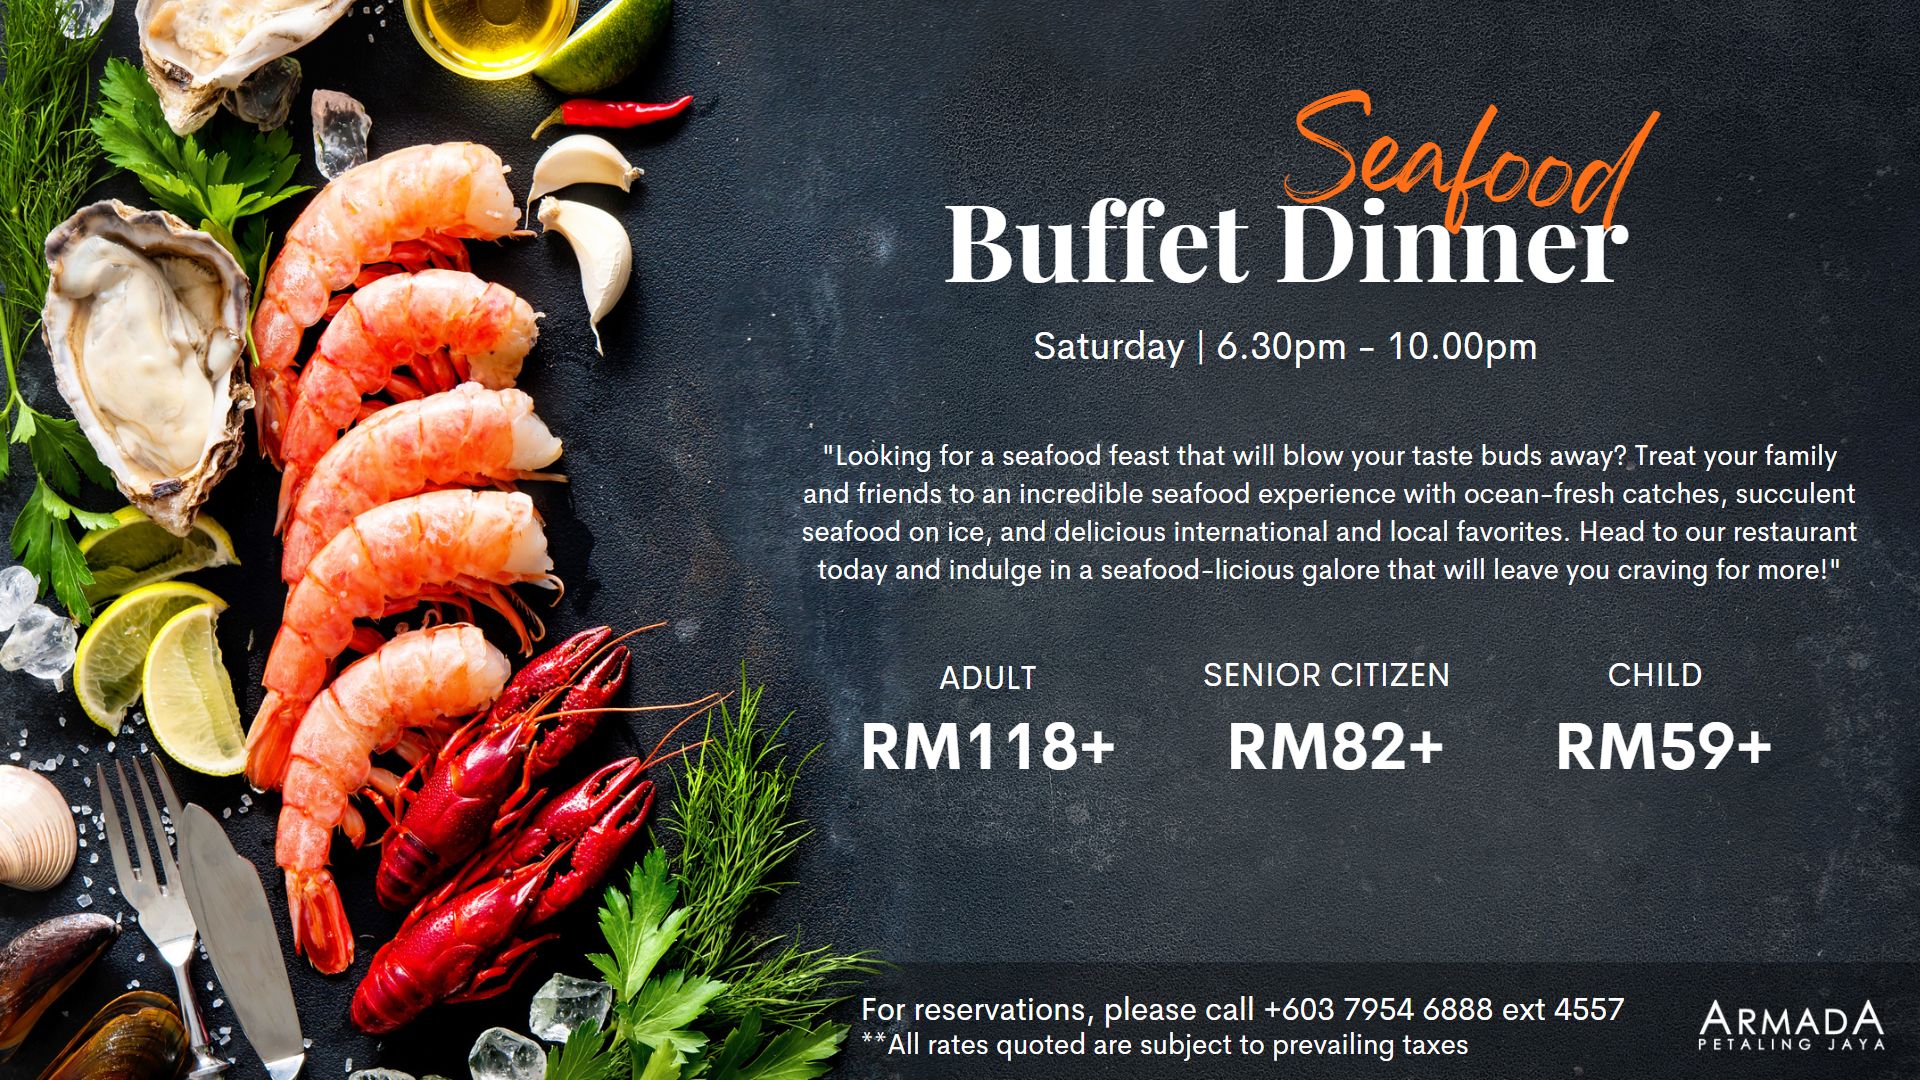 Saturday Seafood Buffet Dinner | Hotel Armada Petaling Jaya